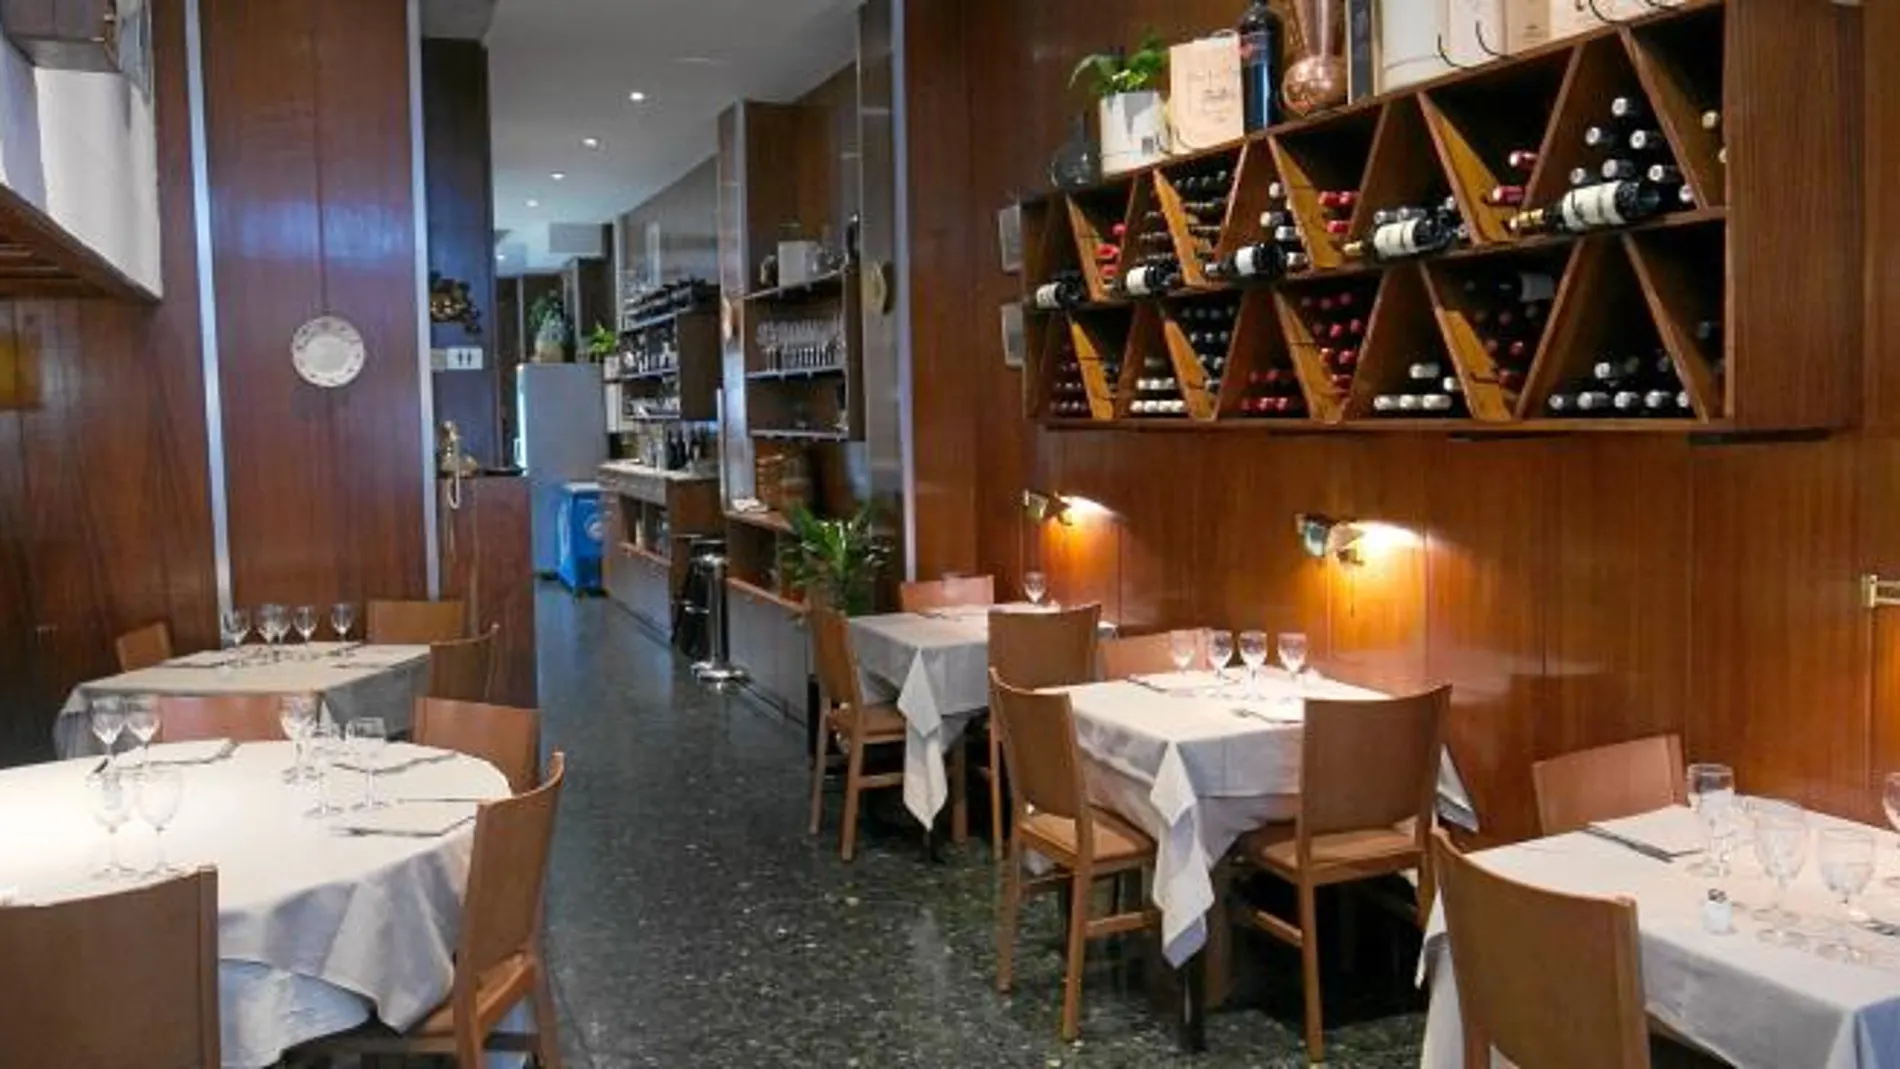 Aquella charcutería que nació hace 50 años es ahora un restaurante mediterráneo con toques franceses